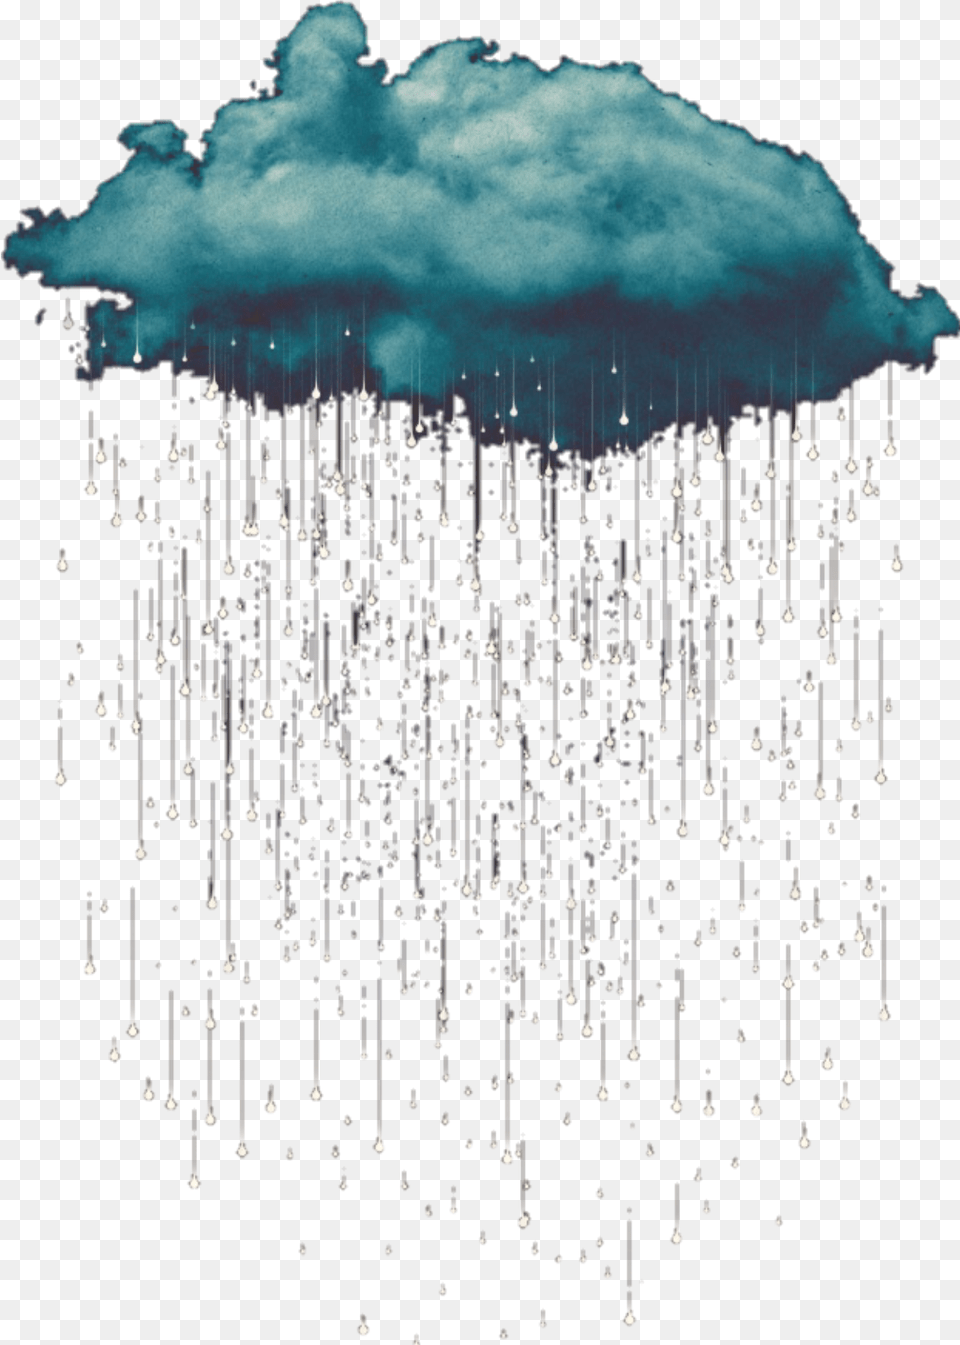 Transparent Rain Clouds Transparent Cloud And Rain, Chandelier, Lamp, Fireworks Png Image